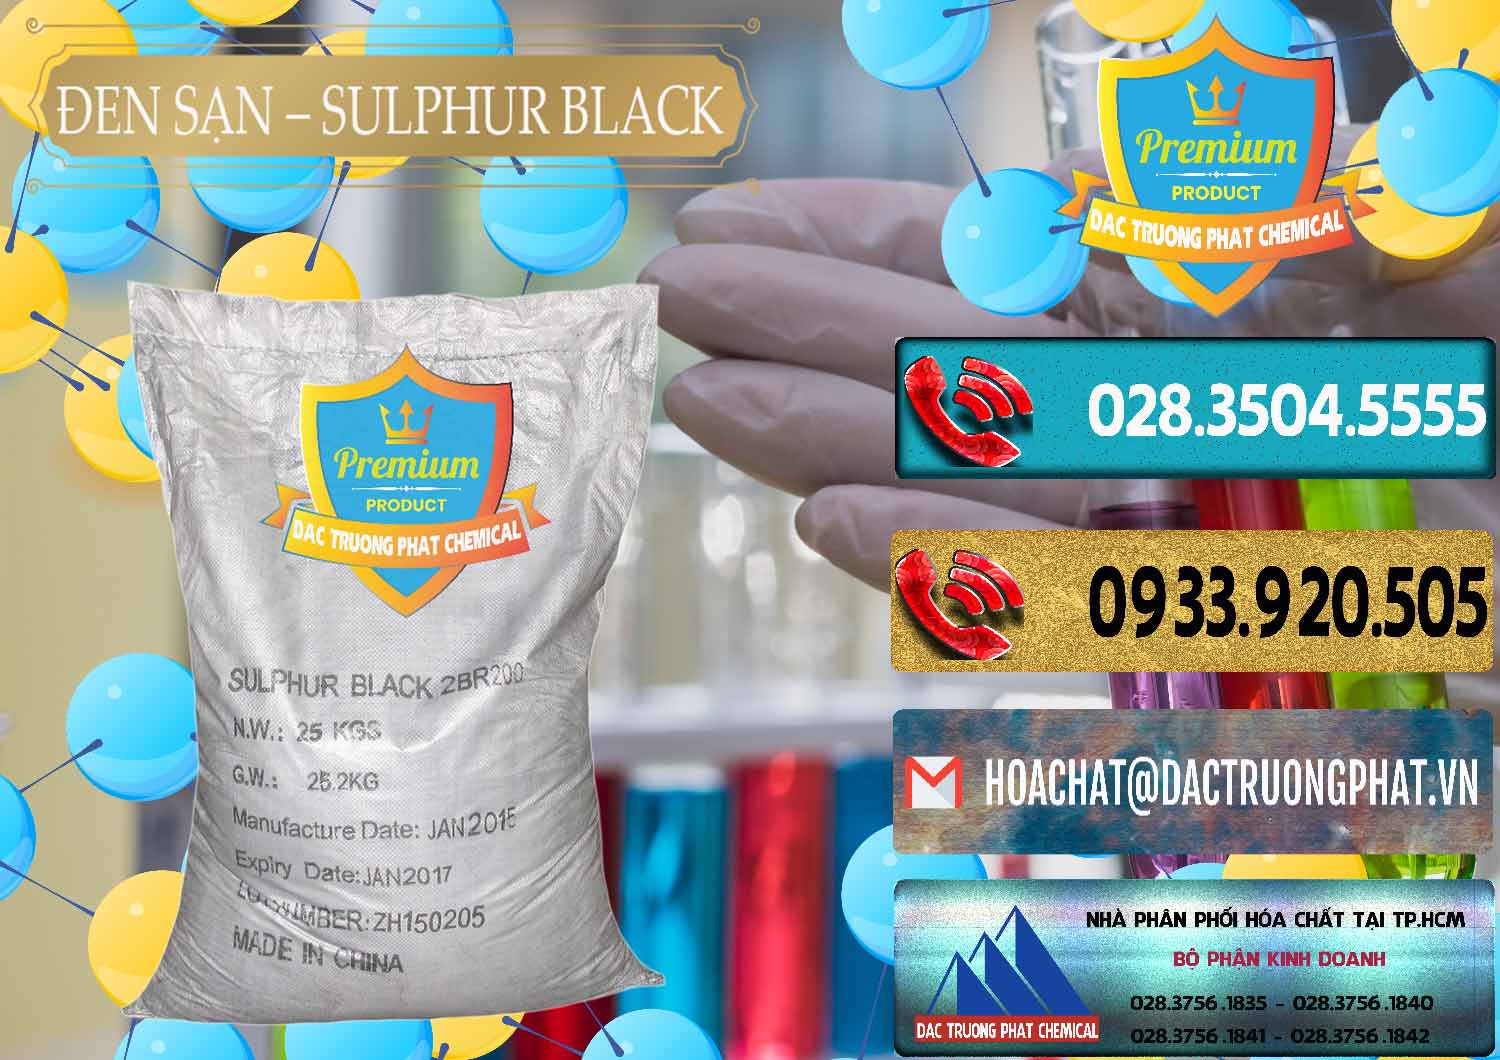 Đơn vị chuyên cung cấp - bán Đen Sạn – Sulphur Black Trung Quốc China - 0062 - Đơn vị bán _ phân phối hóa chất tại TP.HCM - hoachatdetnhuom.com